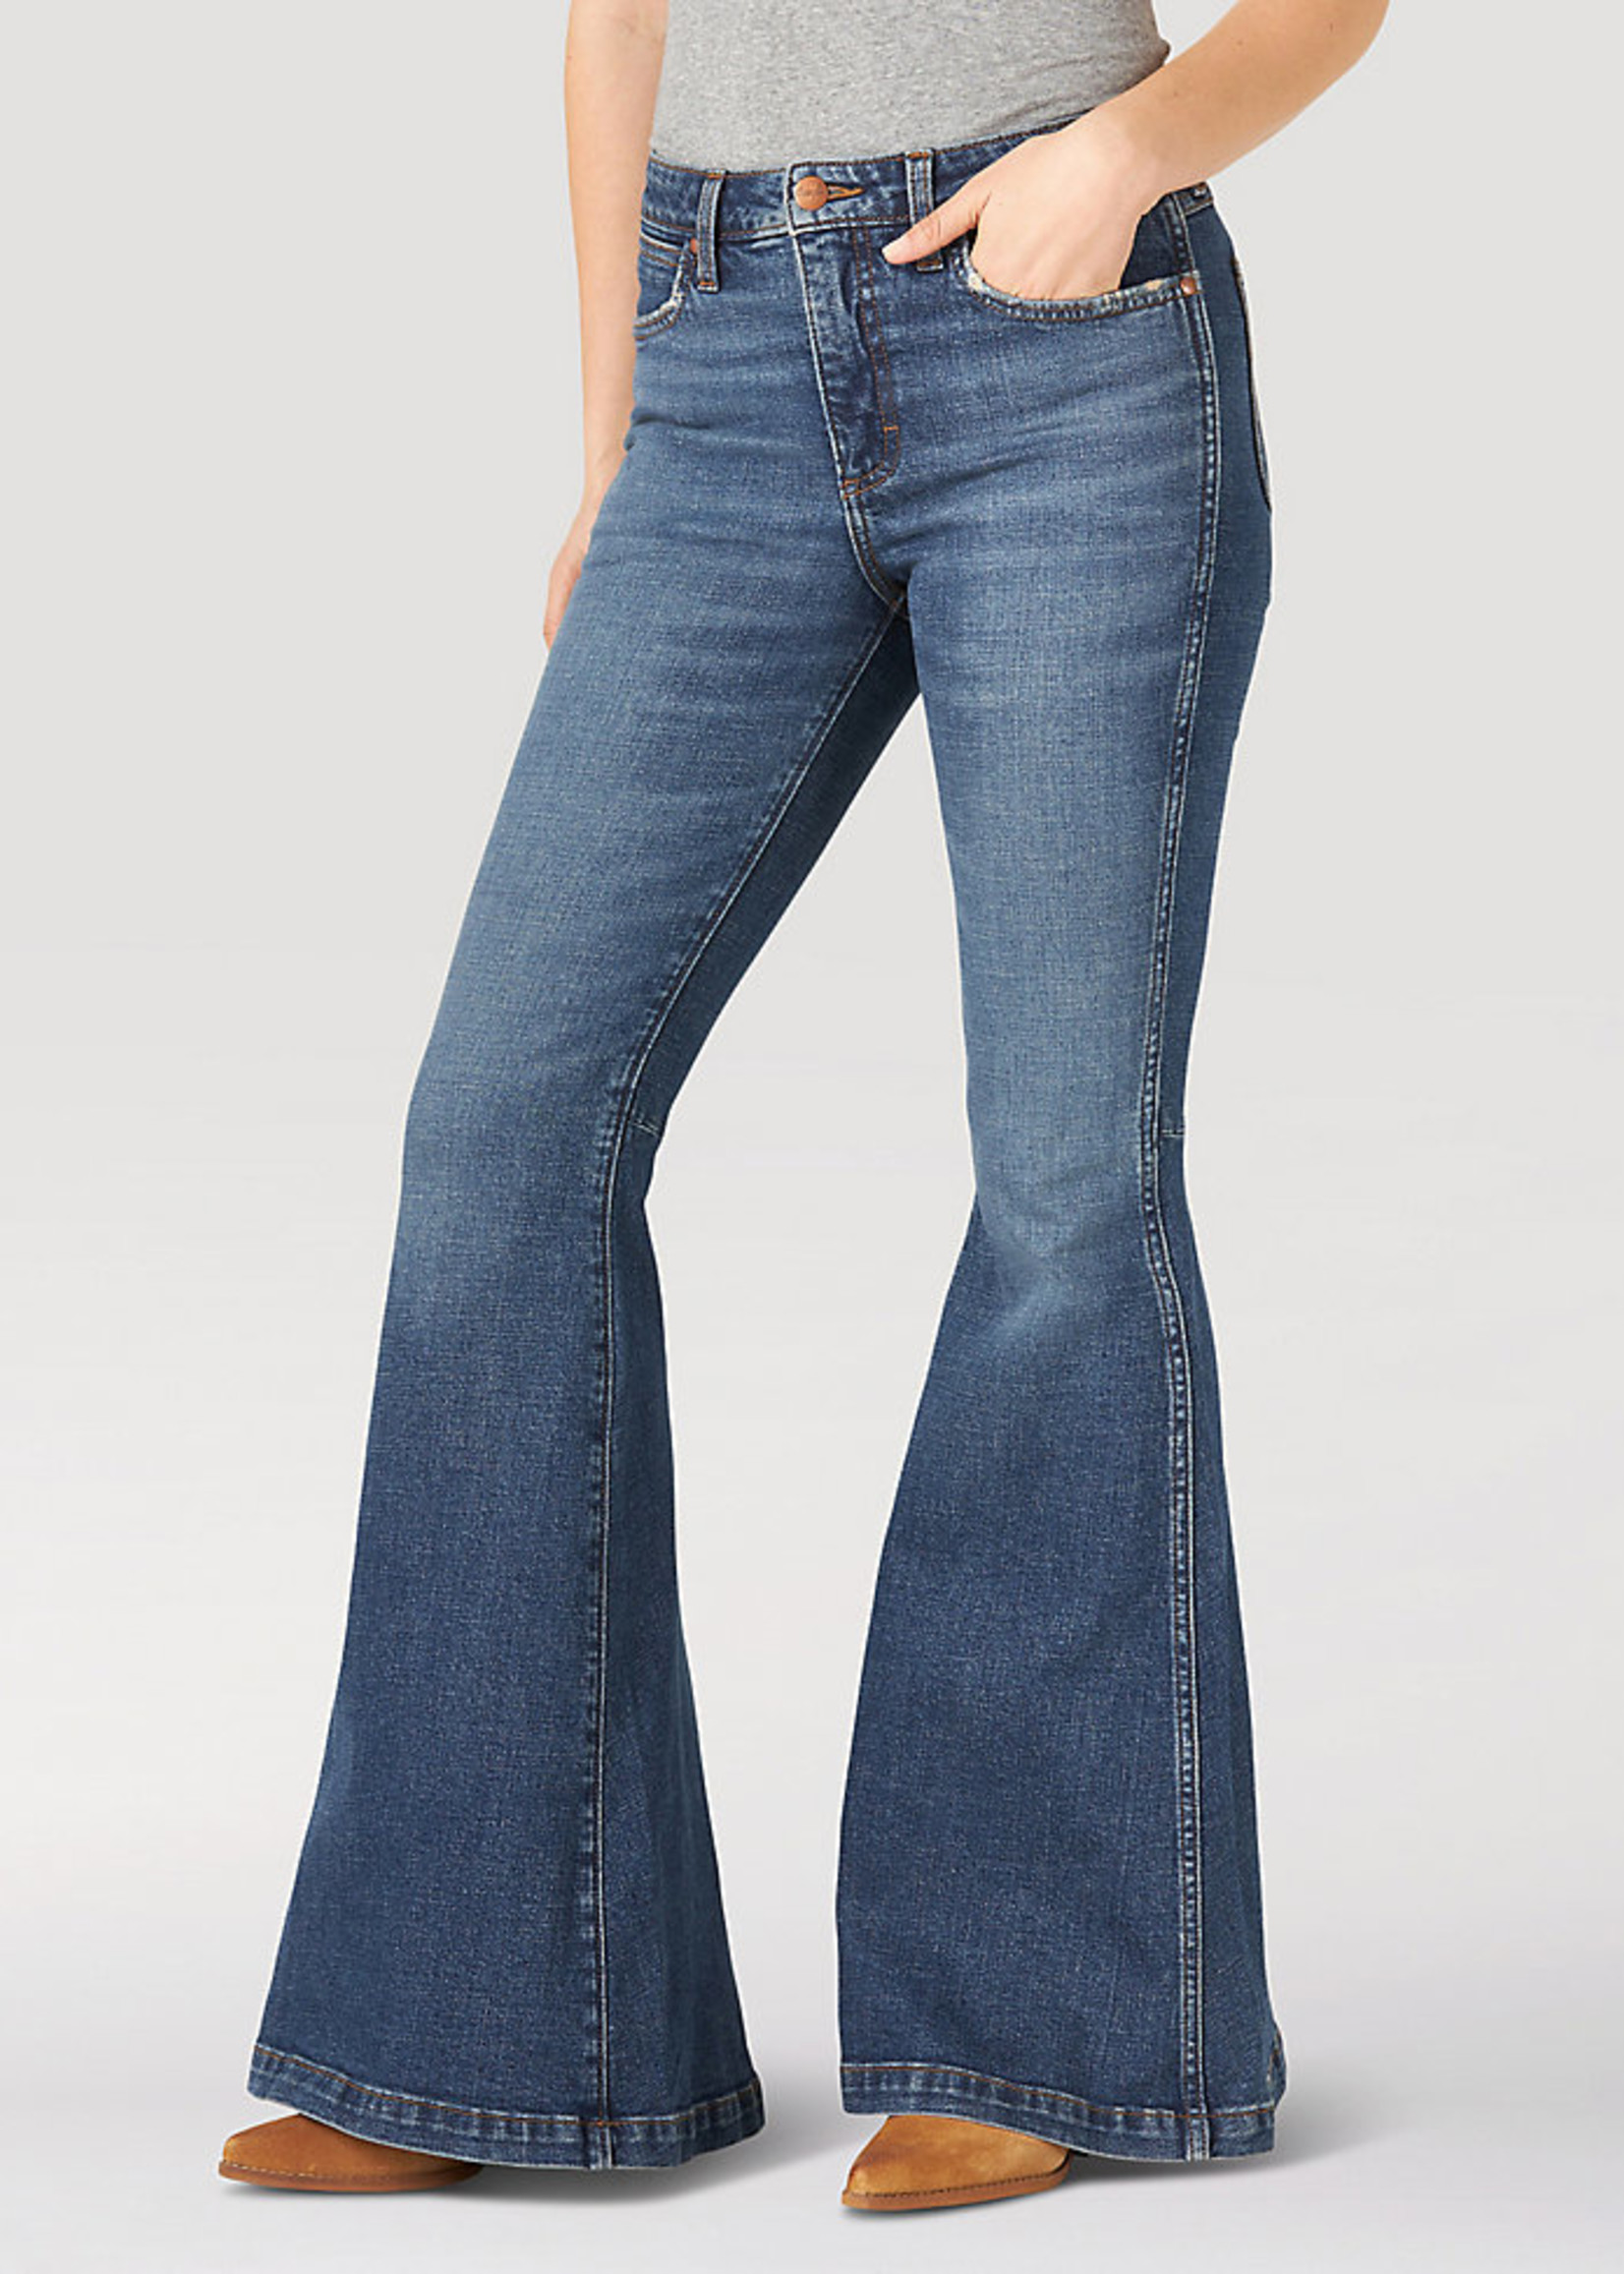 Jeans-Womens WRANGLER High Rise Flare